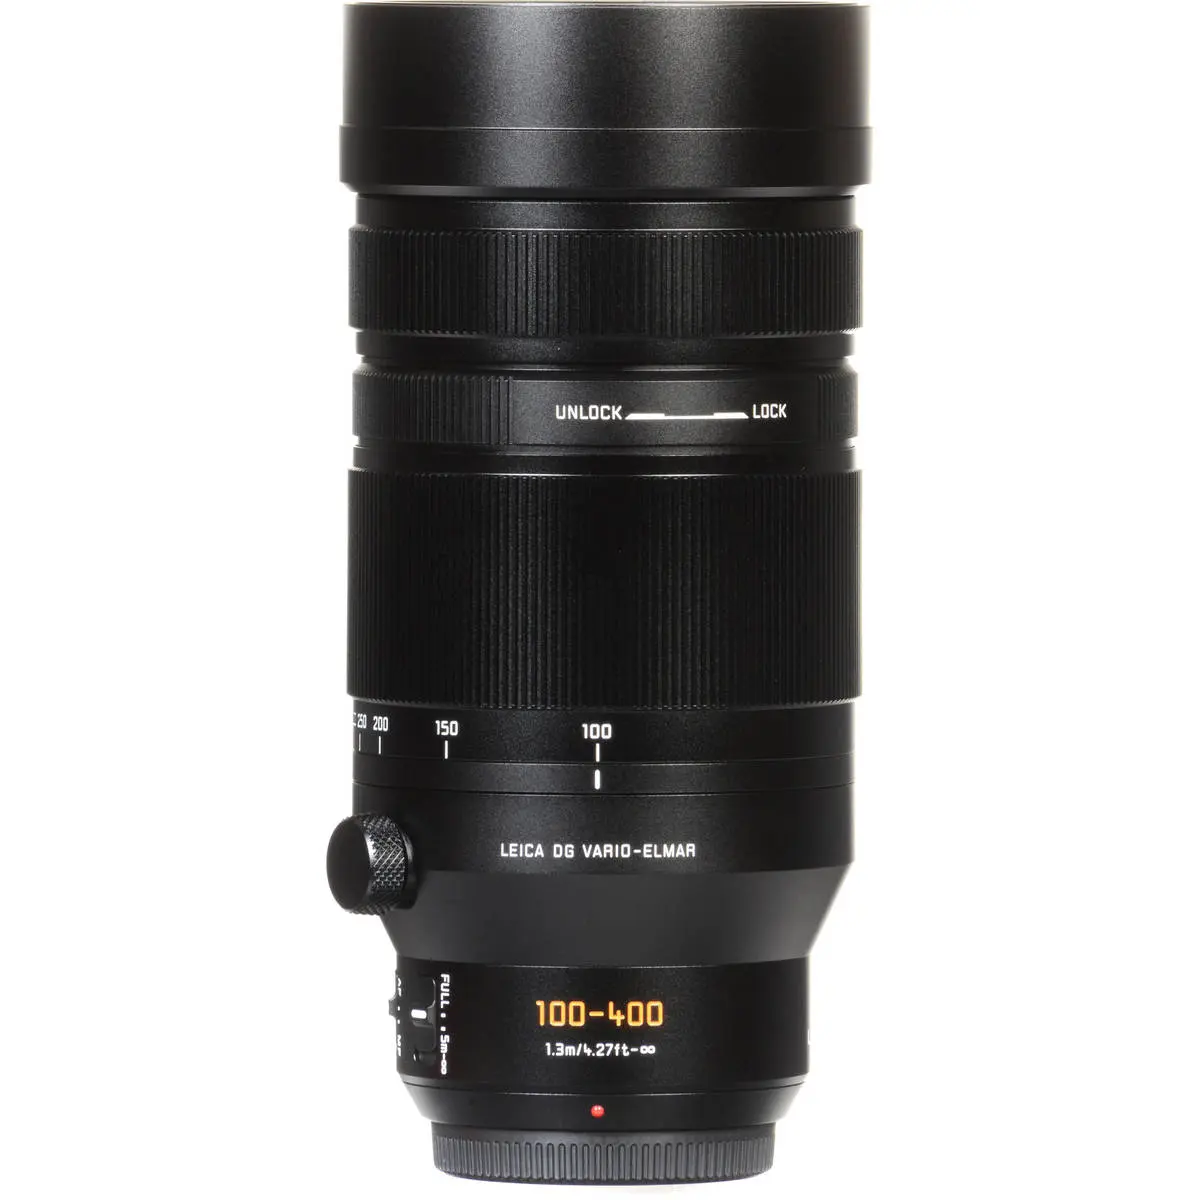 6. Panasonic DG V-Elmar 100-400mm F4.0-6.3 ASPH OIS Lens